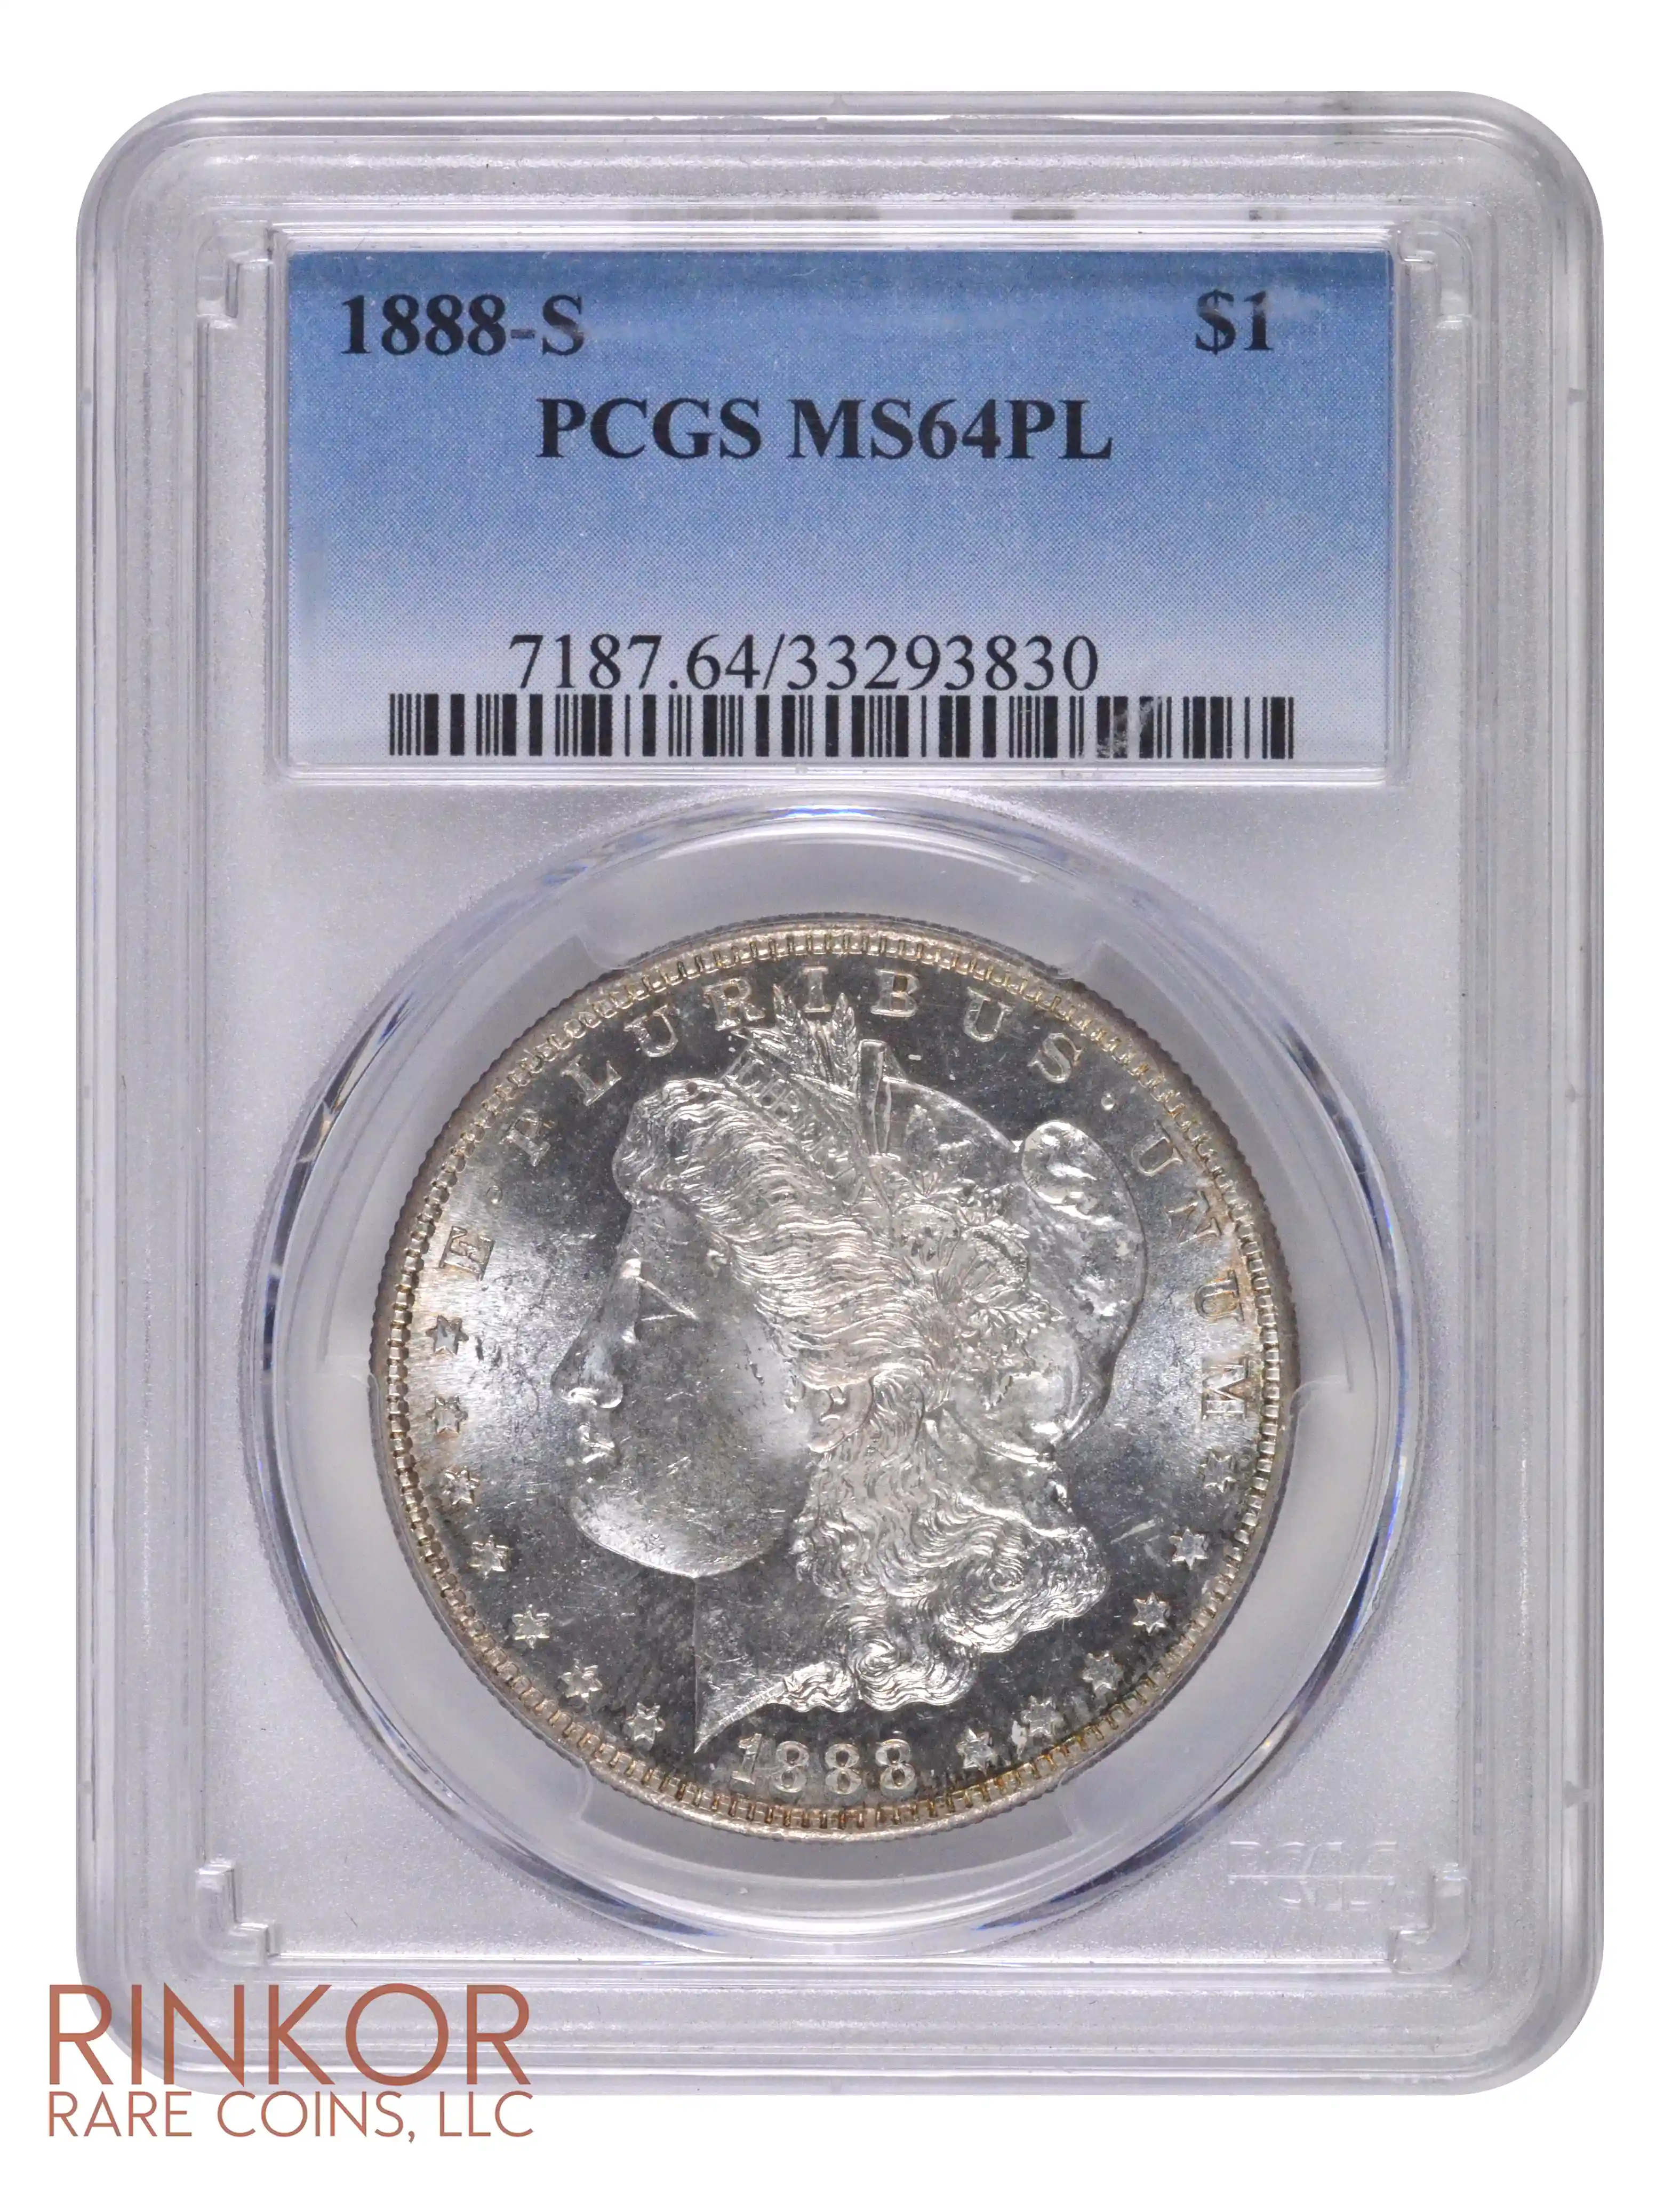 1888-S $1 PCGS MS 64 PL